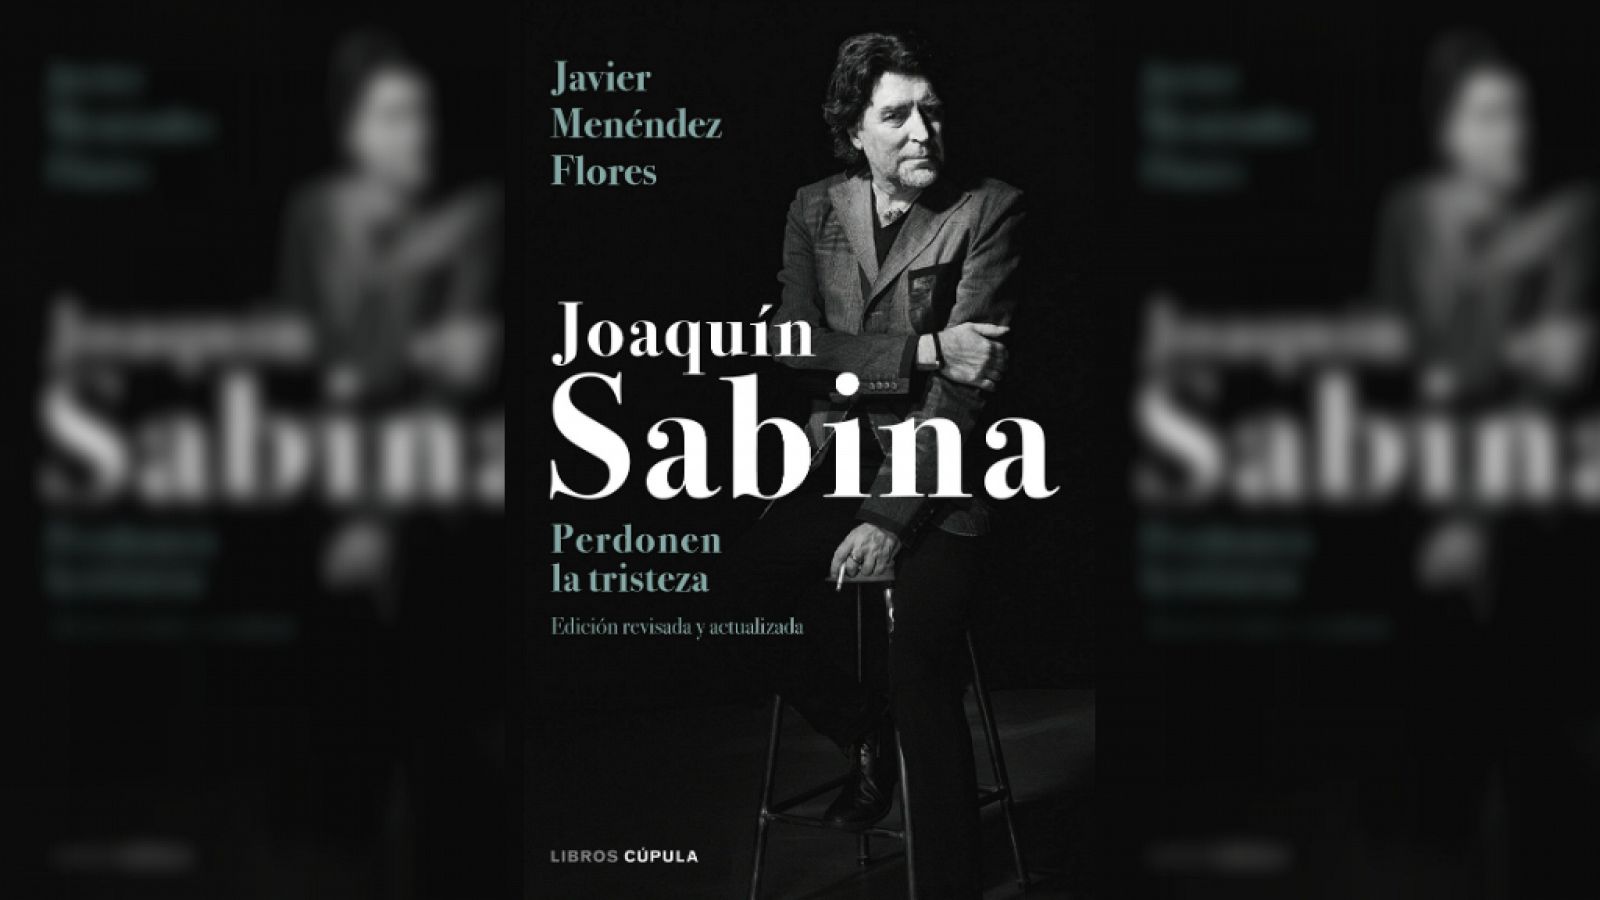 Esto me suena. Las tardes del Ciudadano García - 'Joaquín Sabina. Perdonen la tristeza' biografía actualizada - Escuchar ahora